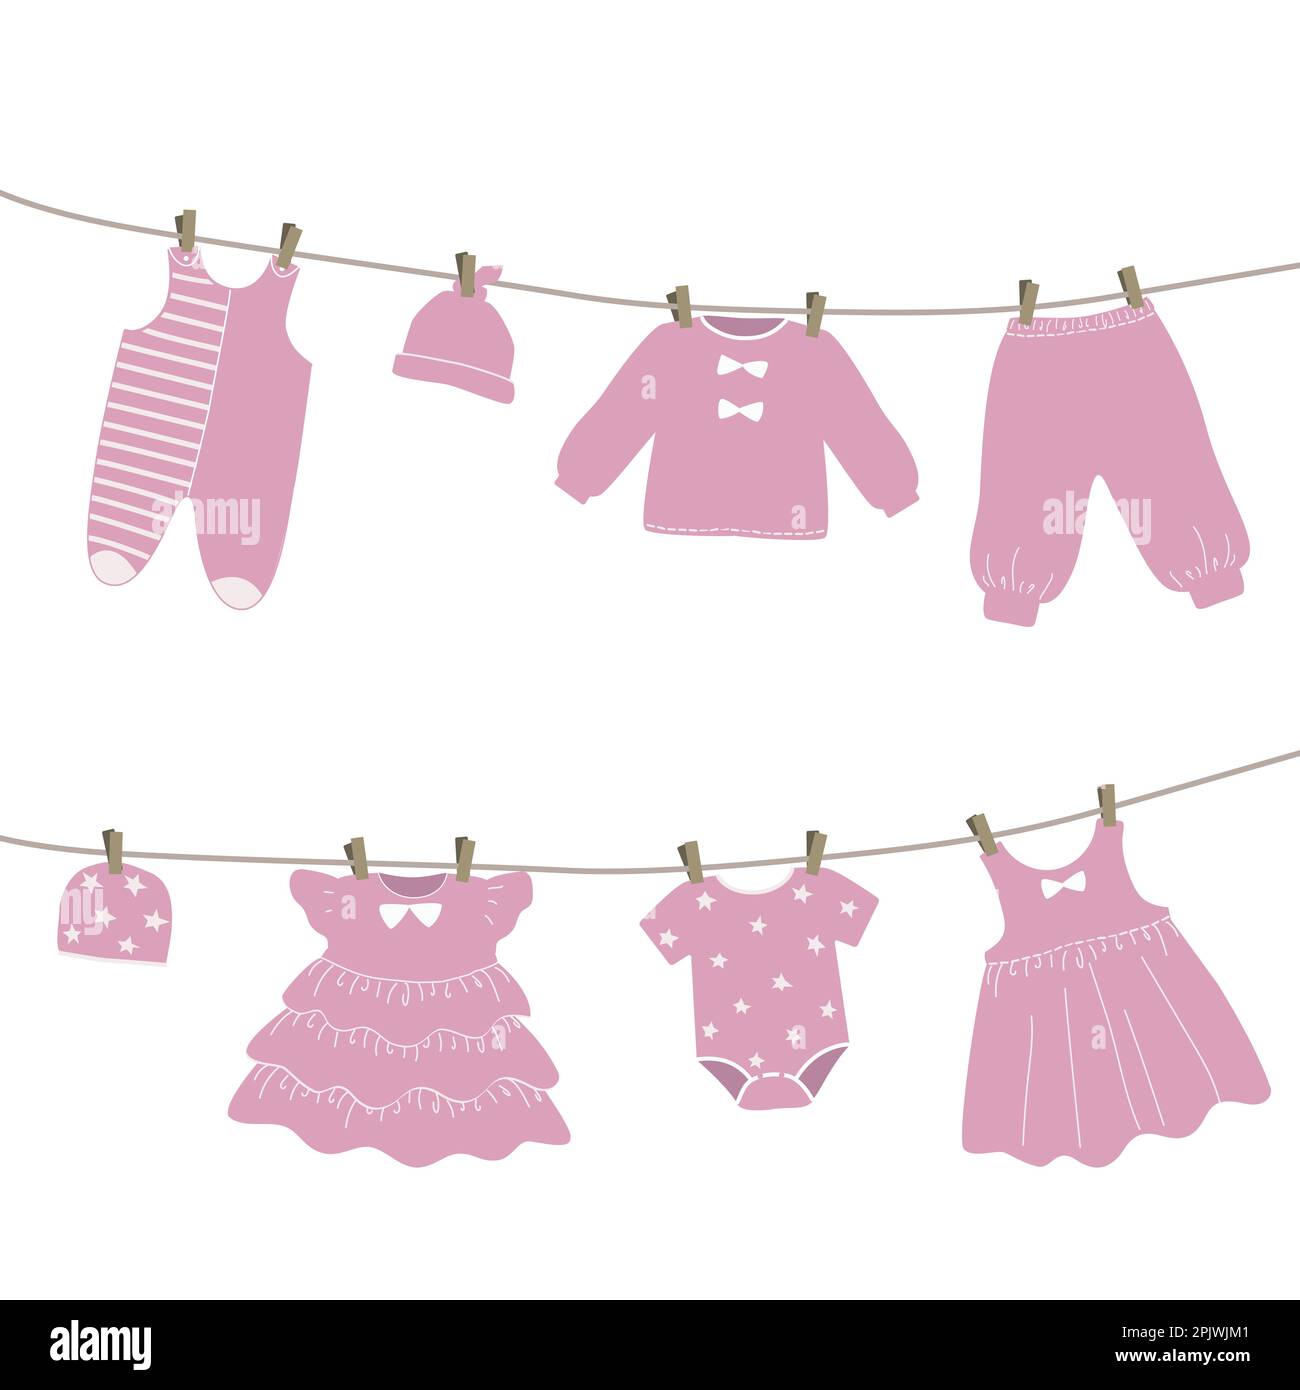 Les vêtements de bébé sont accrochés à la corde à linge. Les choses sont séchées sur des épingles à linge après le lavage. Illustration vectorielle en rose Illustration de Vecteur